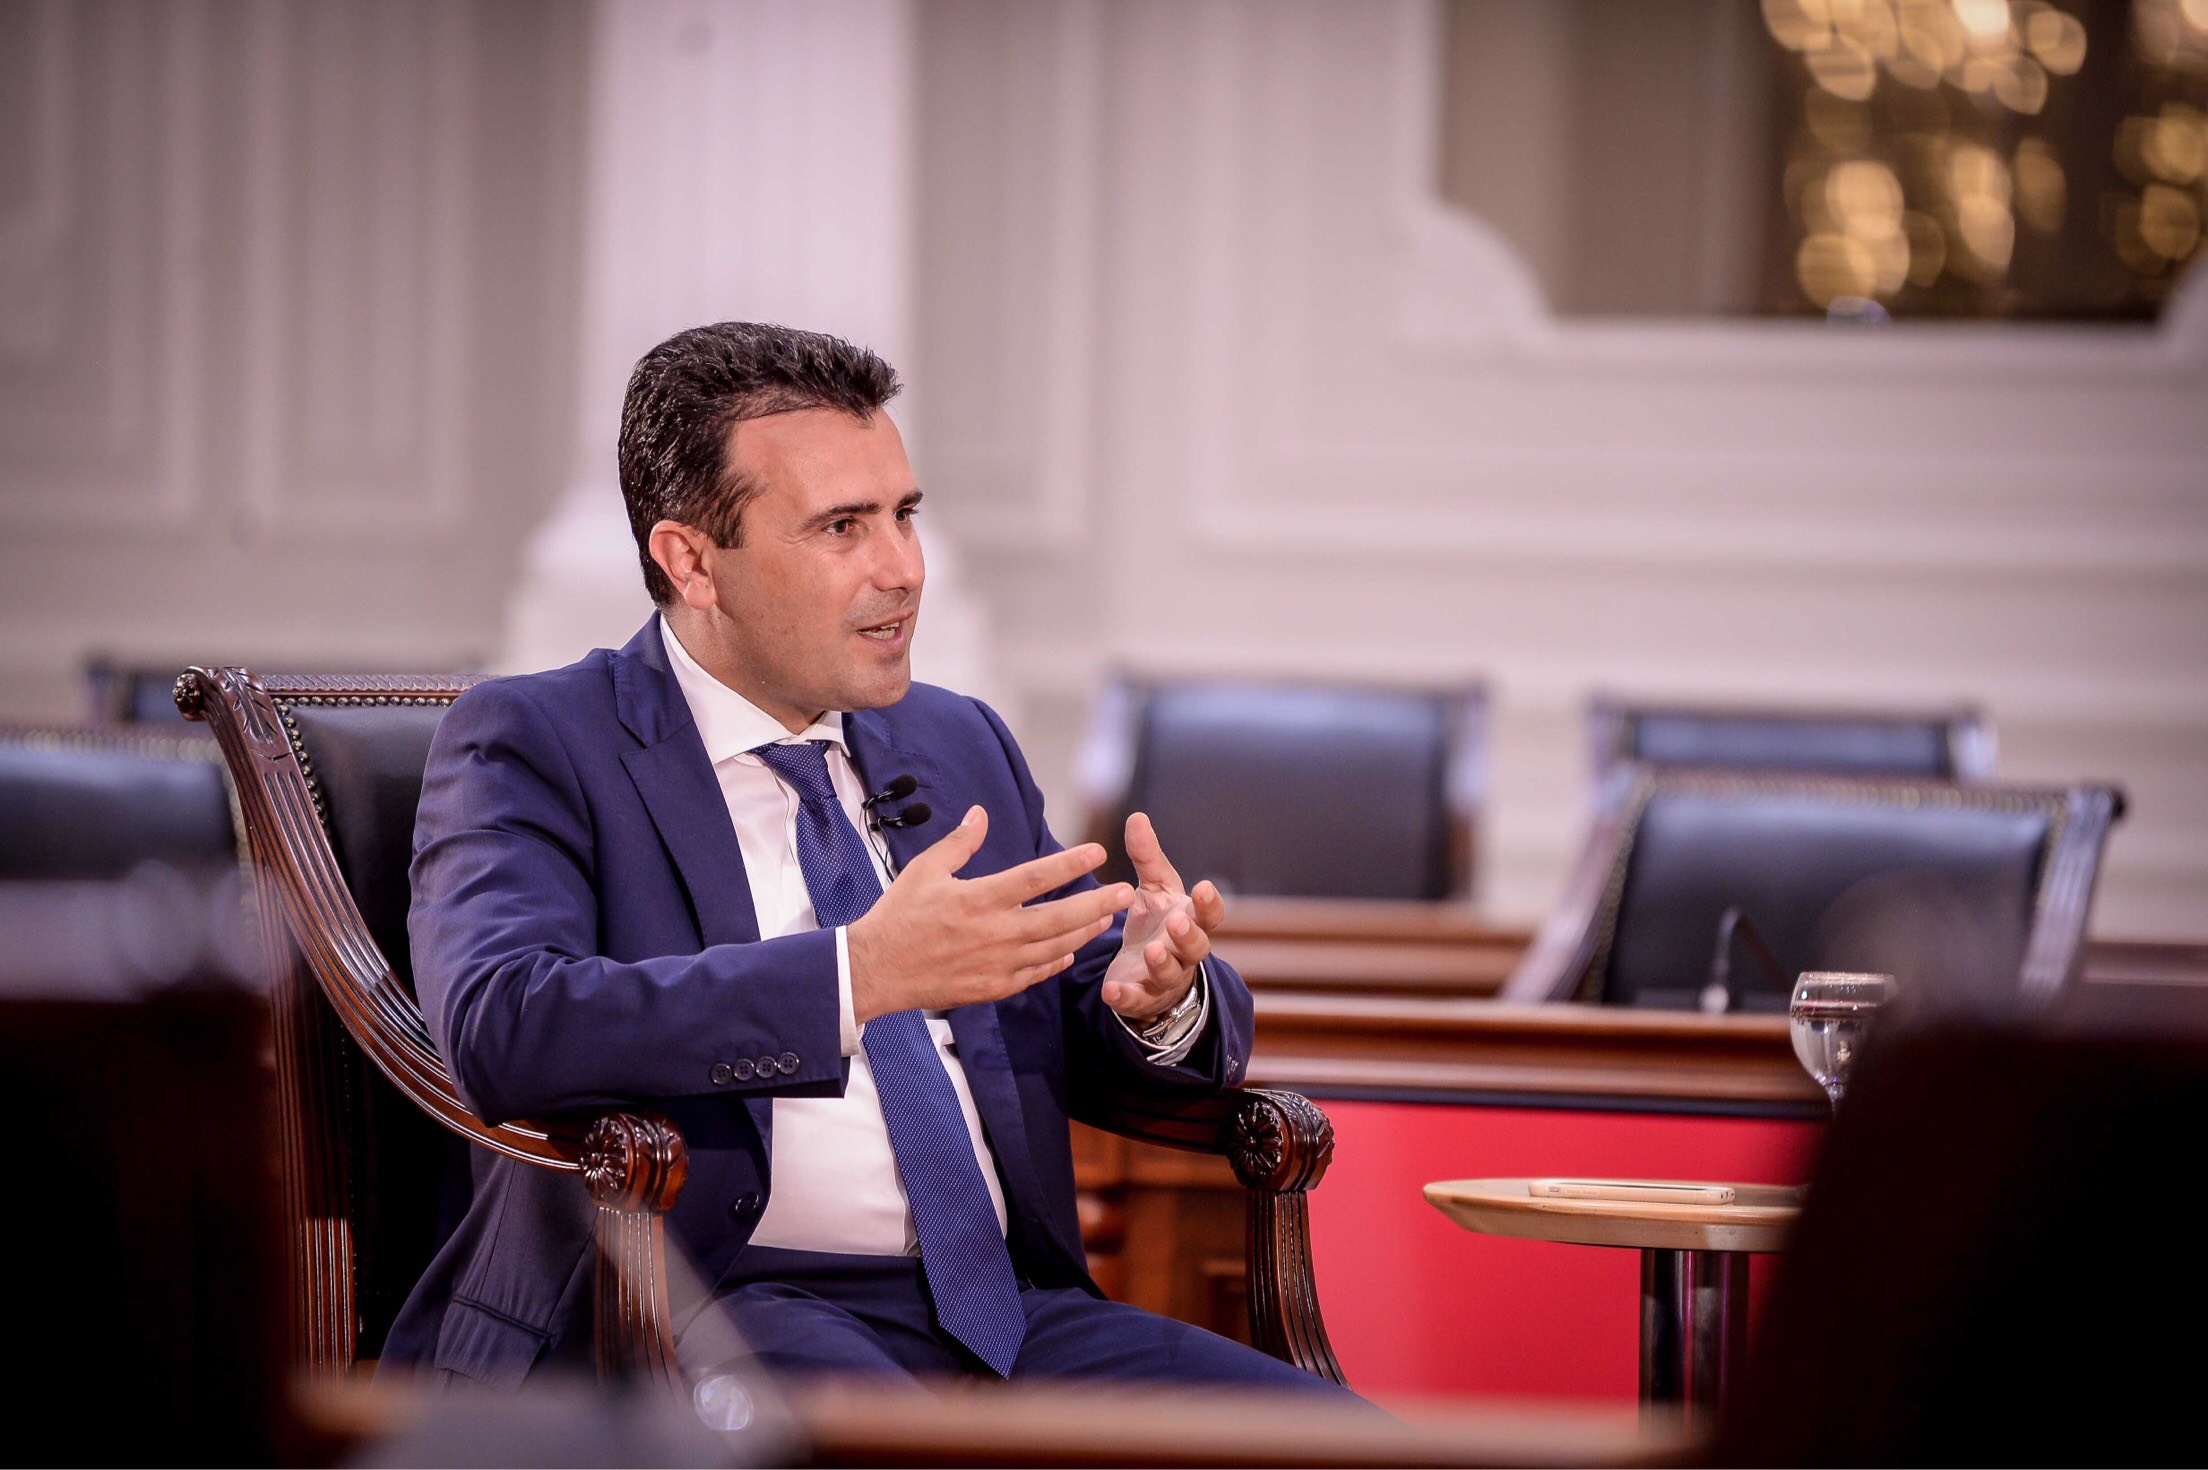 Συνέντευξη Ζάεφ: «Βόρειο τμήμα της Ελλάδας» αποκάλεσε τη Μακεδονία